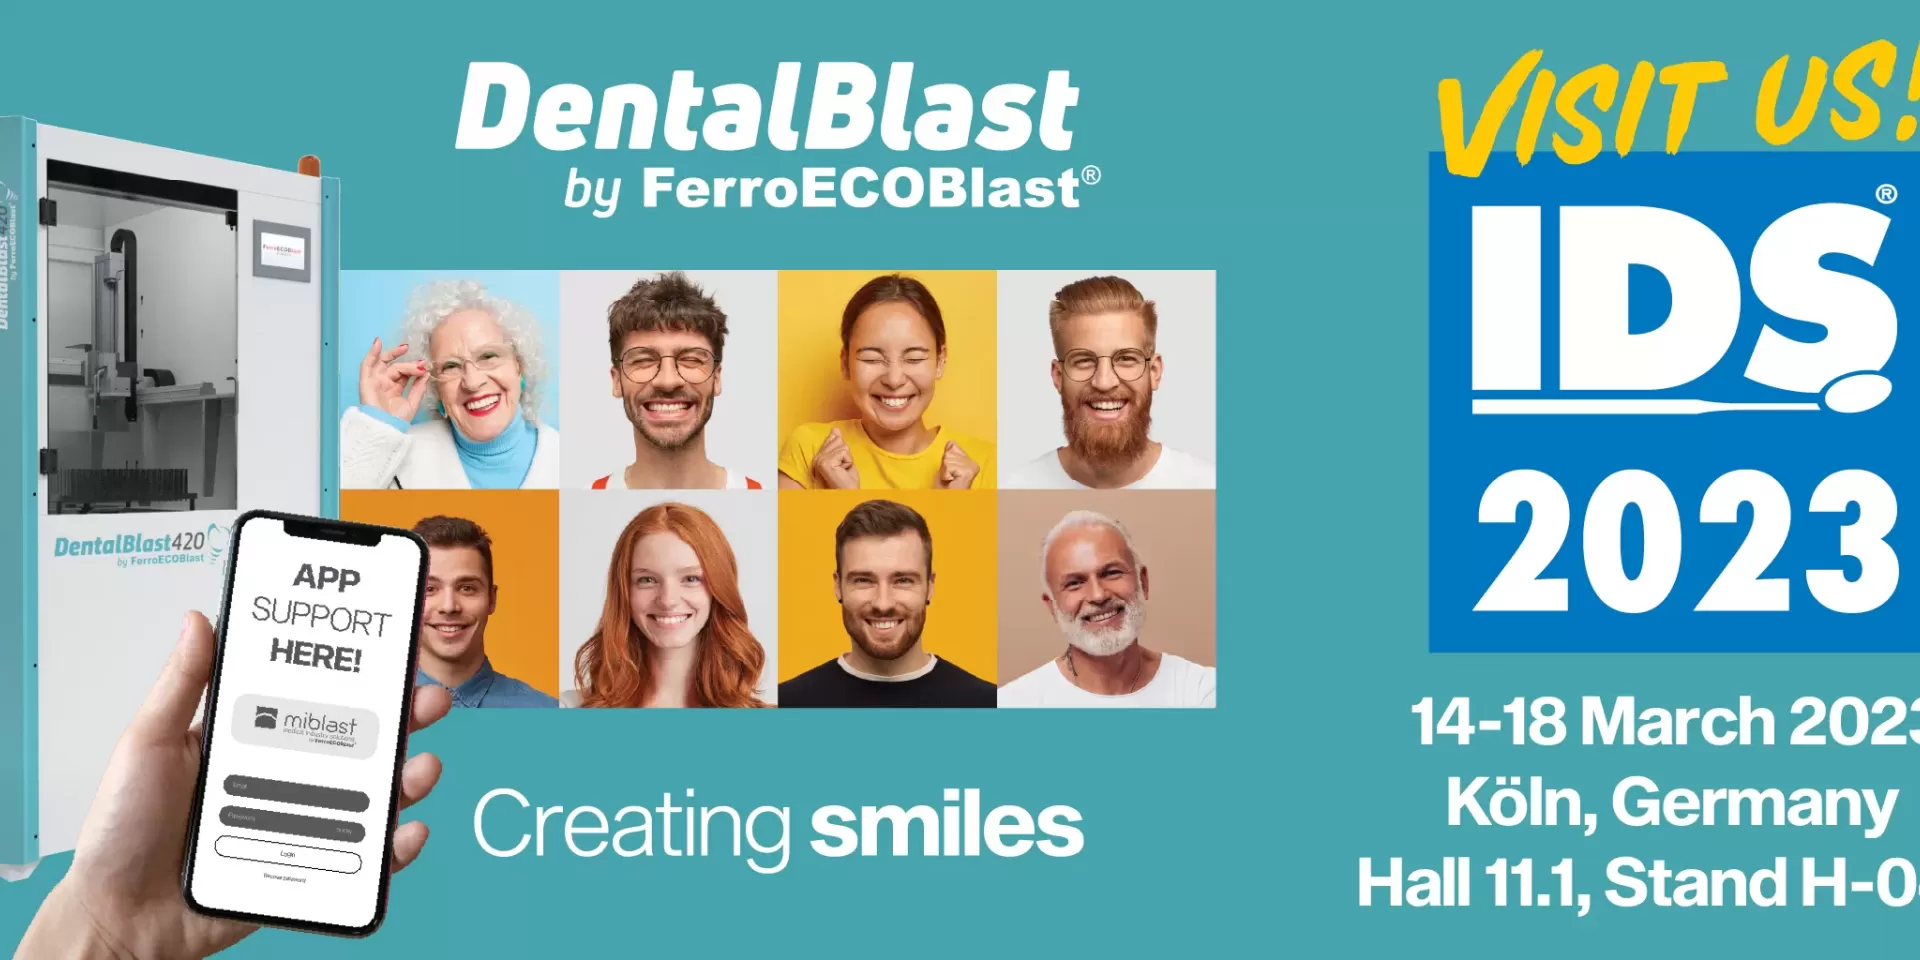 Meet DentalBlast at IDS 2023!
